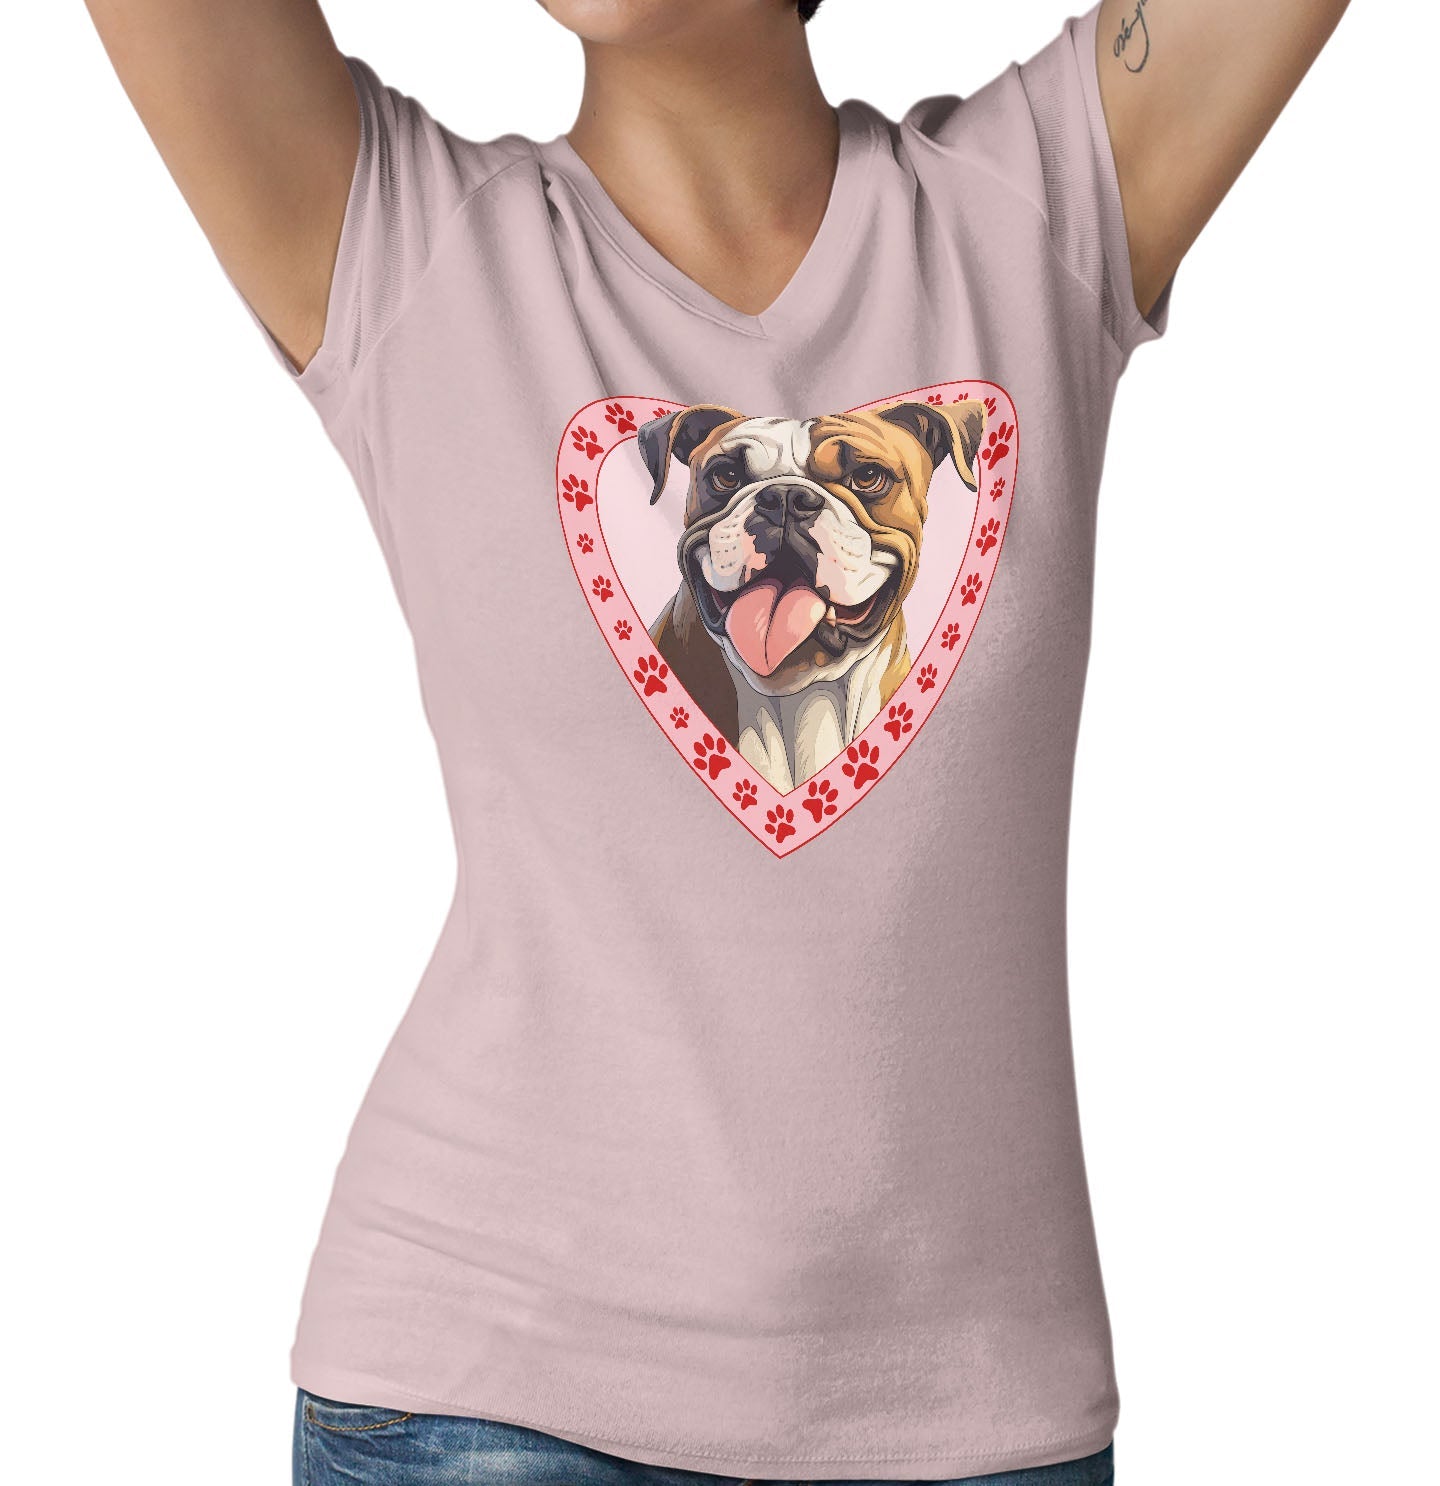 Bulldog Illustration In Heart - Women's V-Neck T-Shirt